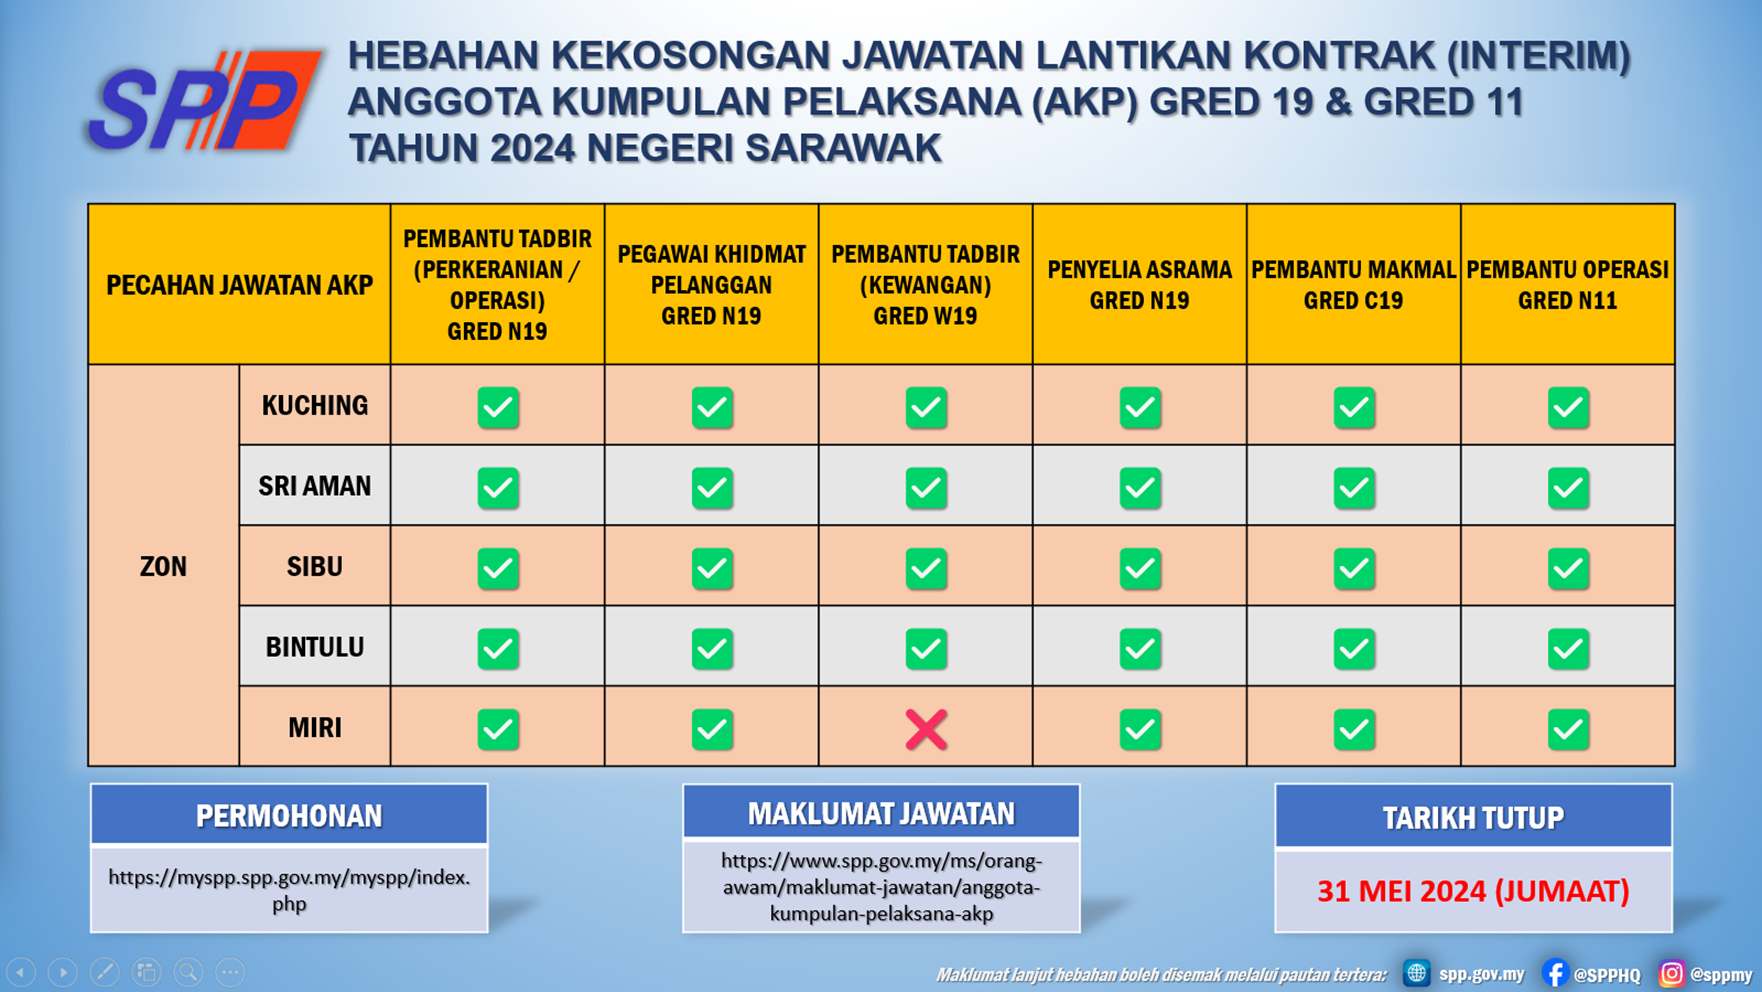 Hebahan_AKP_Sarawak_2024.png